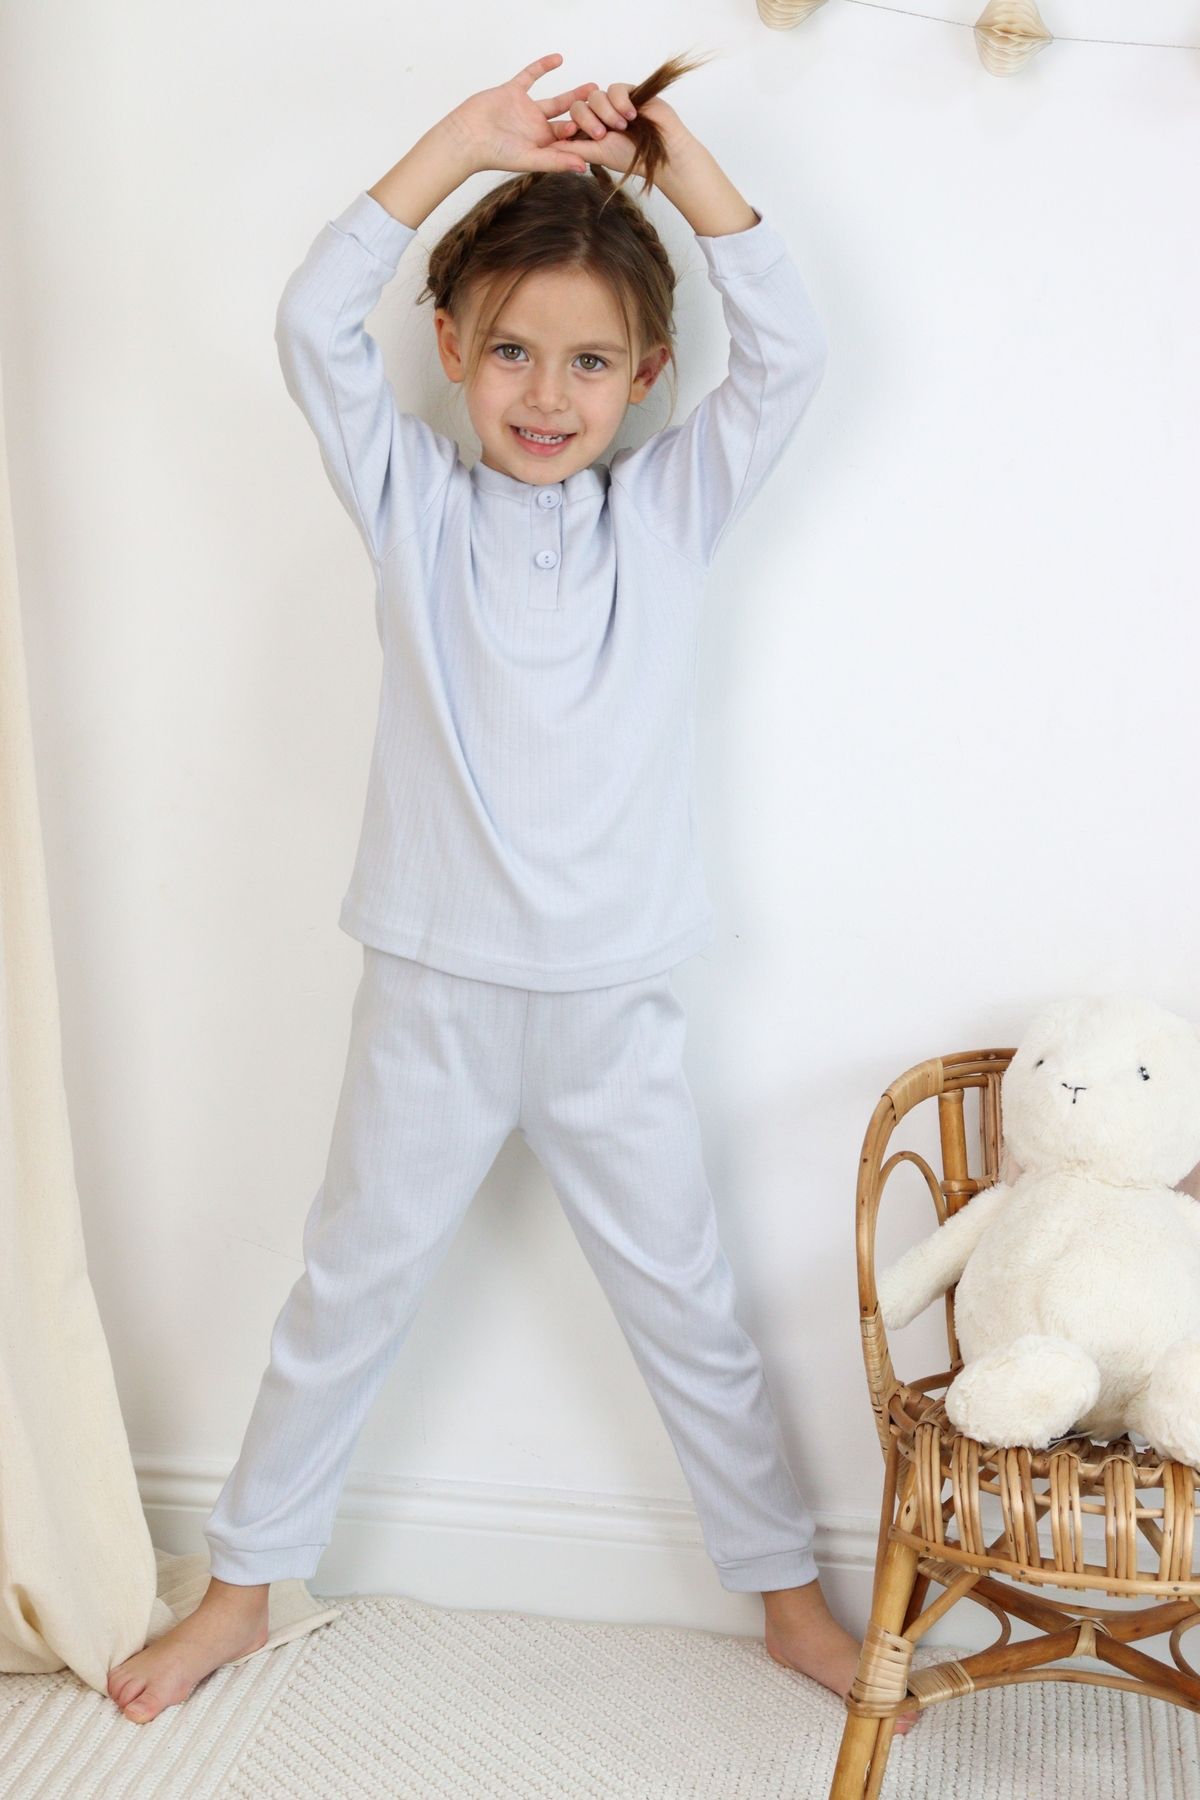 HARİKA KİDS Kız-Erkek (Unisex) Çocuk İnterlok Kumaş Orta Kalınlıkta Pamuklu Pijama Takımı